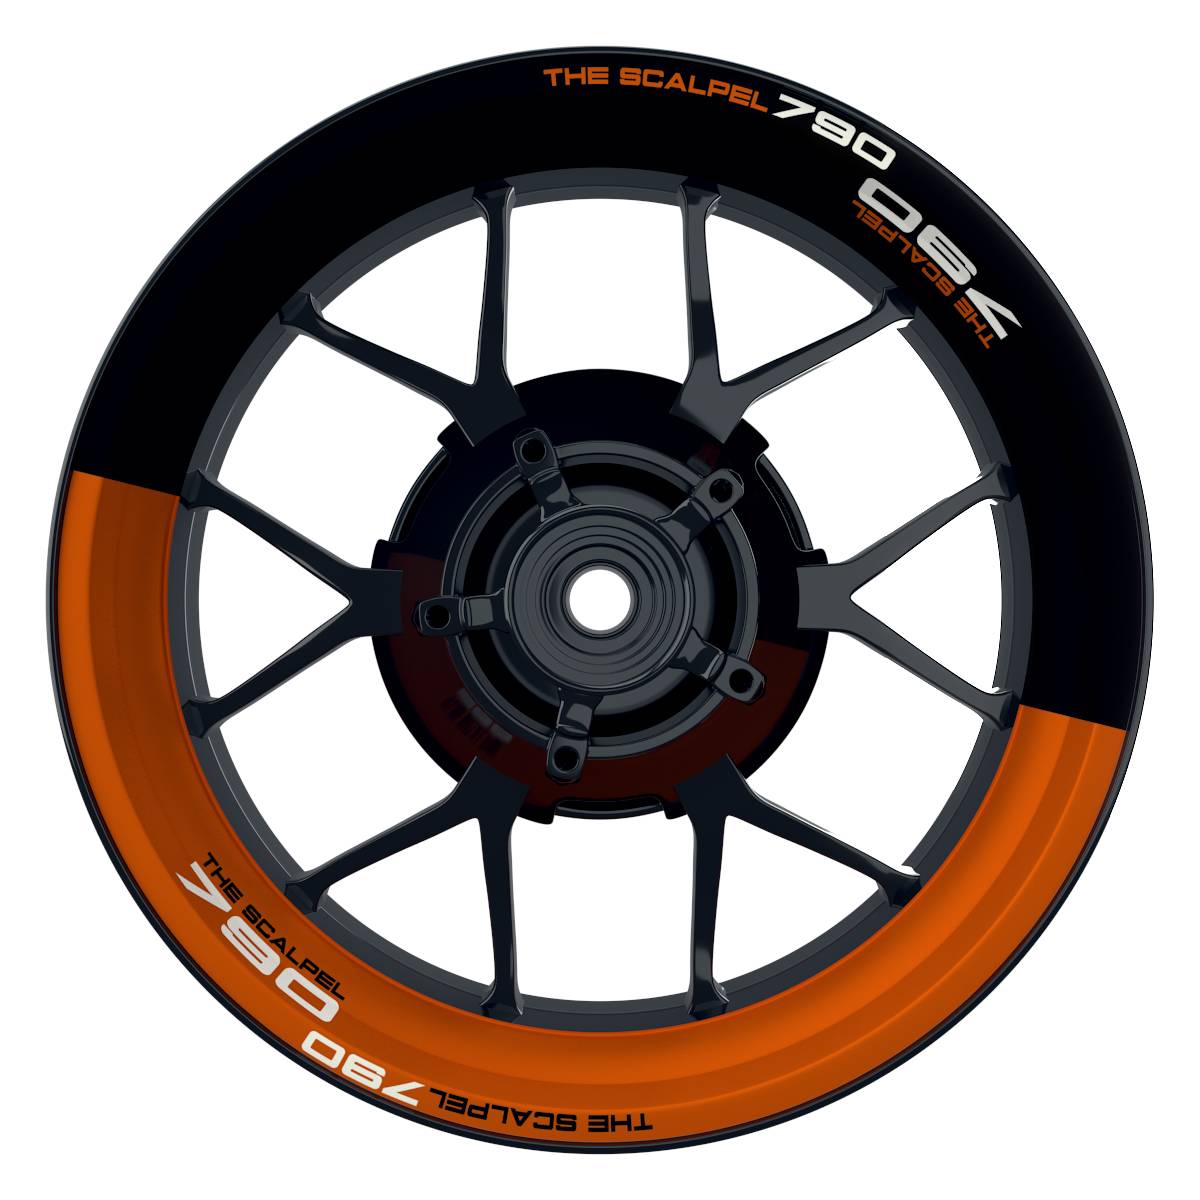 THE SCALPEL 790 halb halb schwarz orange Wheelsticker Felgenaufkleber